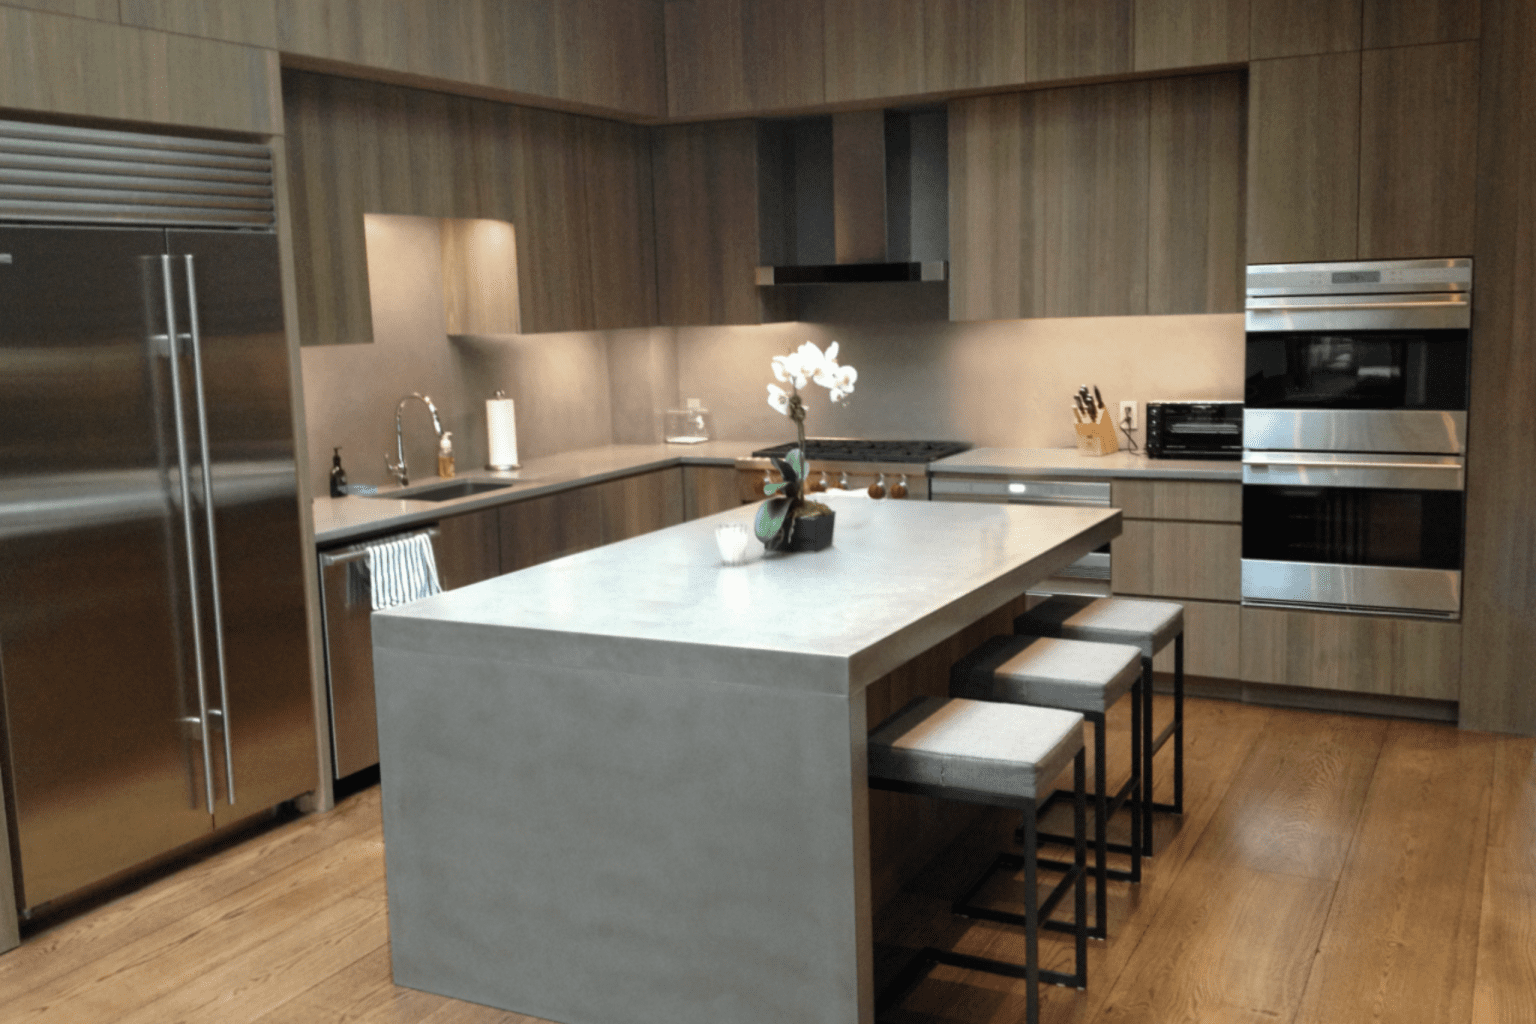 Top Trends In Kitchen Countertop Design Sebring Design Build 8 1536x1024 